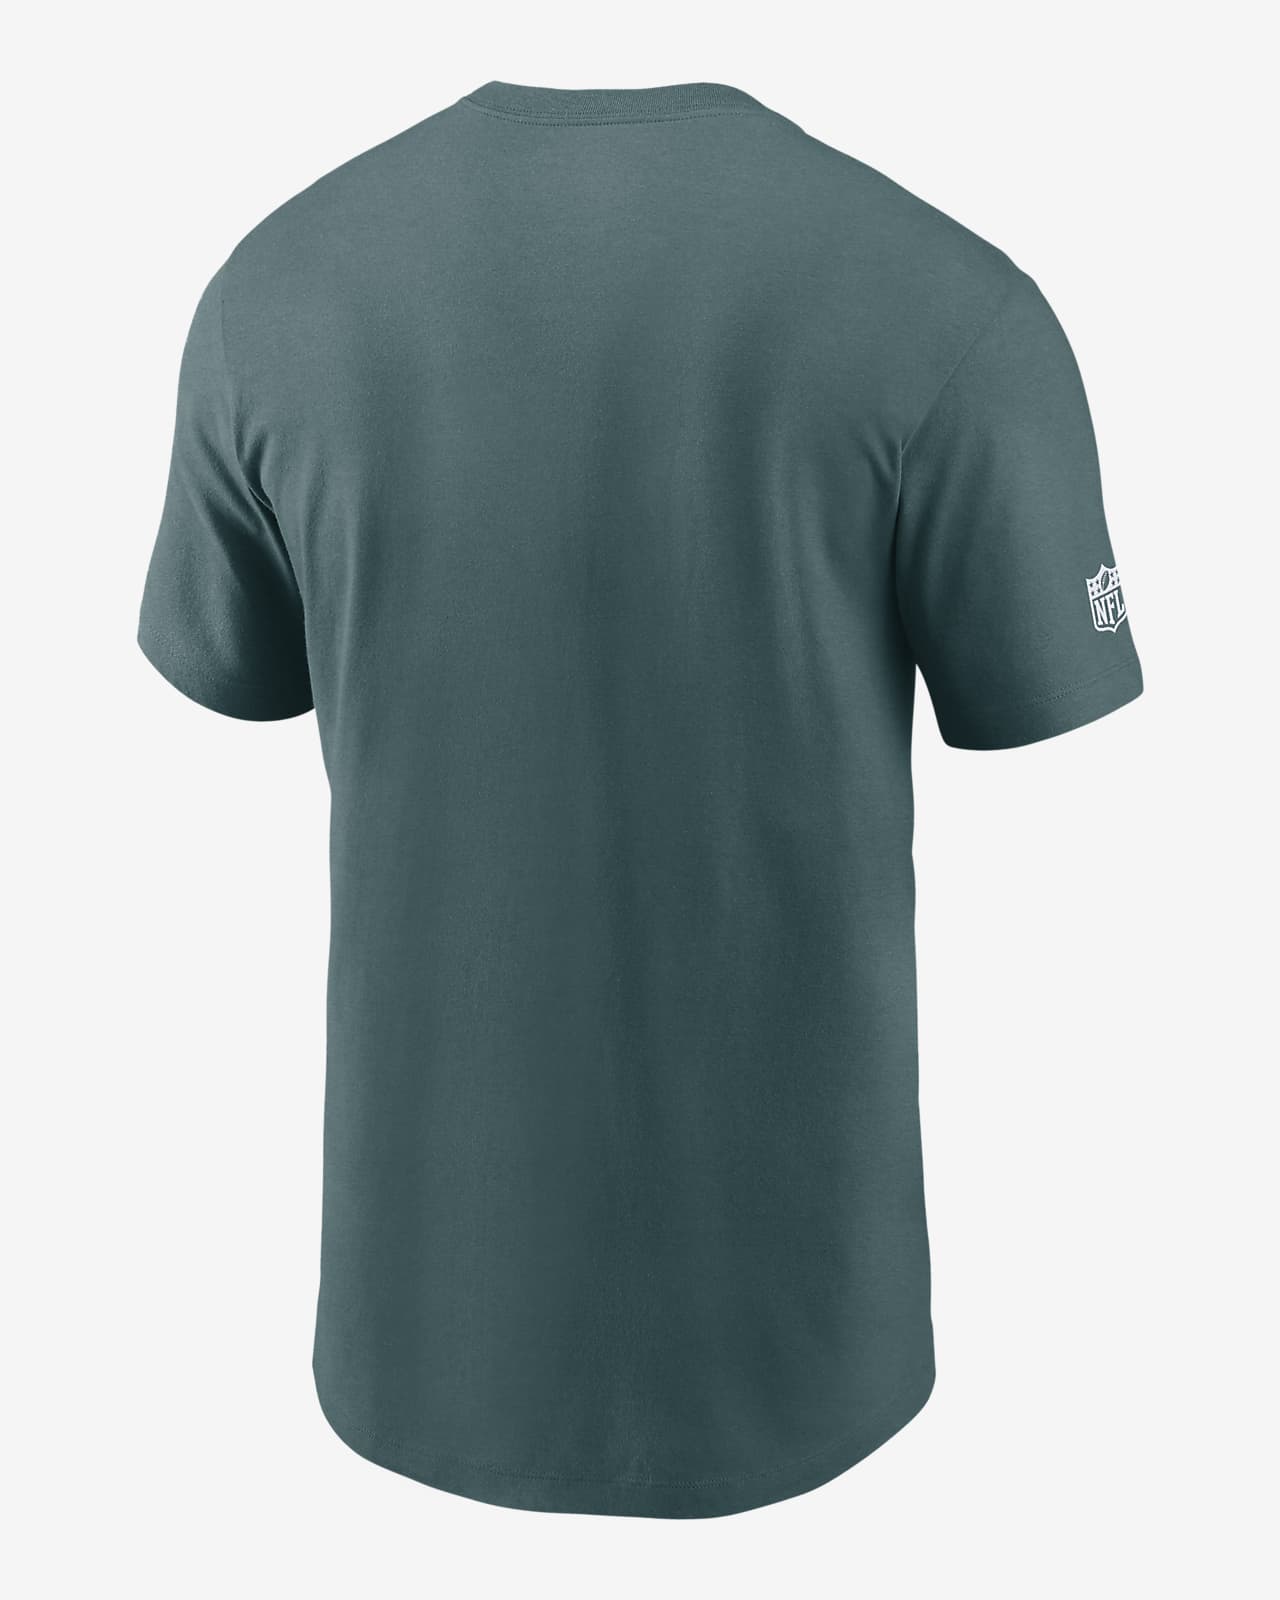 Nike Dri-FIT Sideline Team (NFL Philadelphia Eagles) Men's T-Shirt.